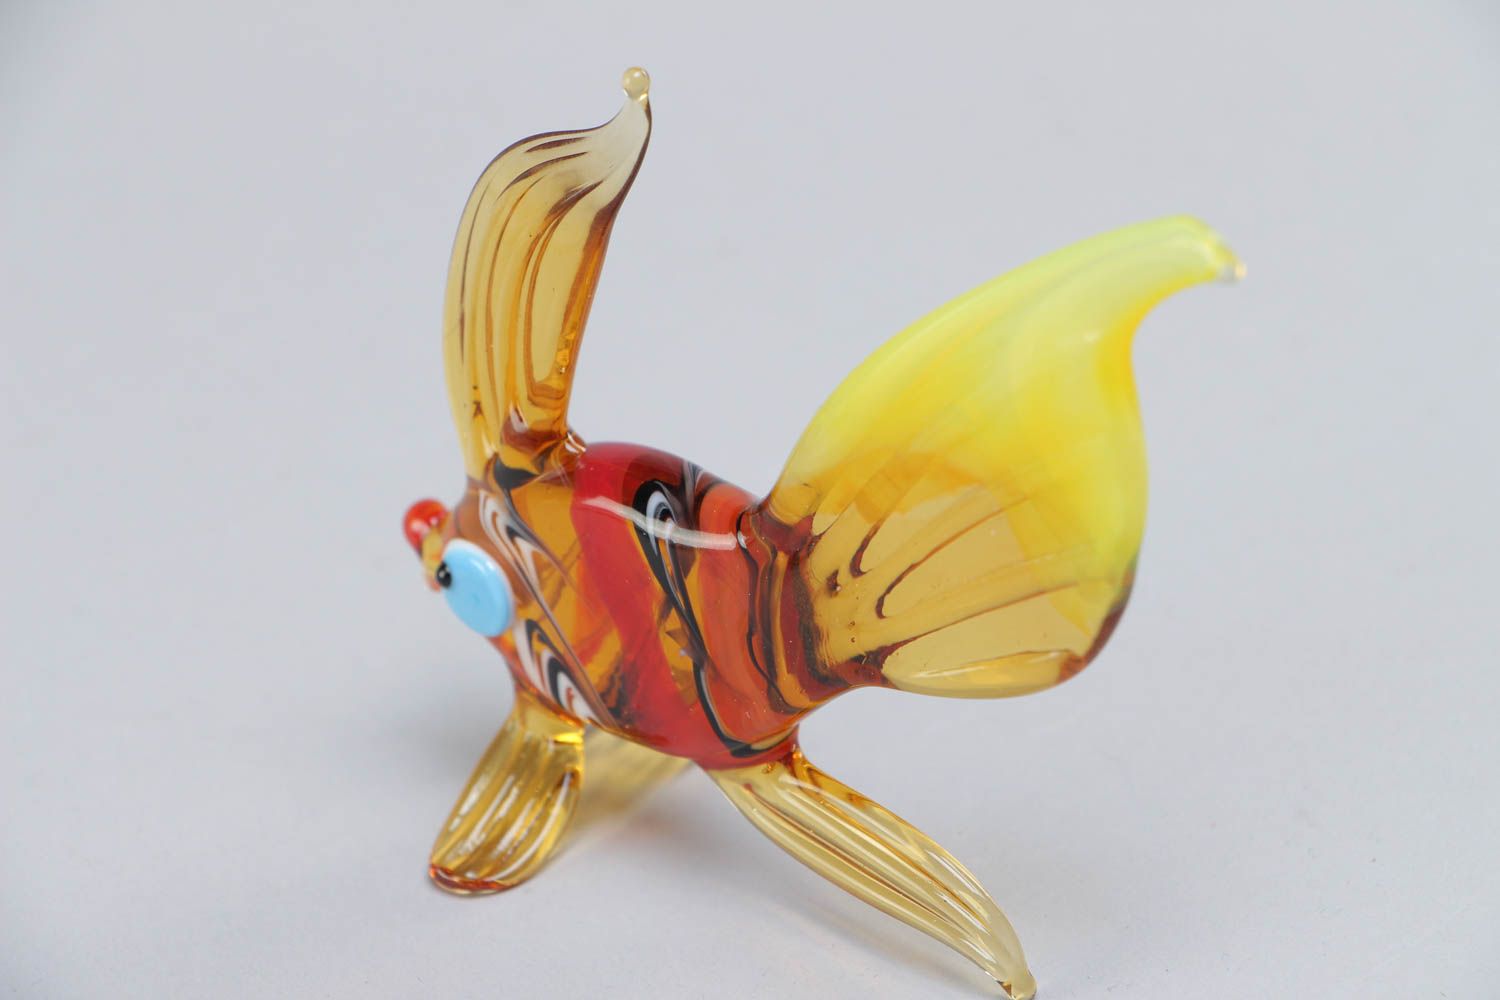 Фигурка золотой рыбки из стекла в технике лэмпворк ручной работы красочная  фото 4